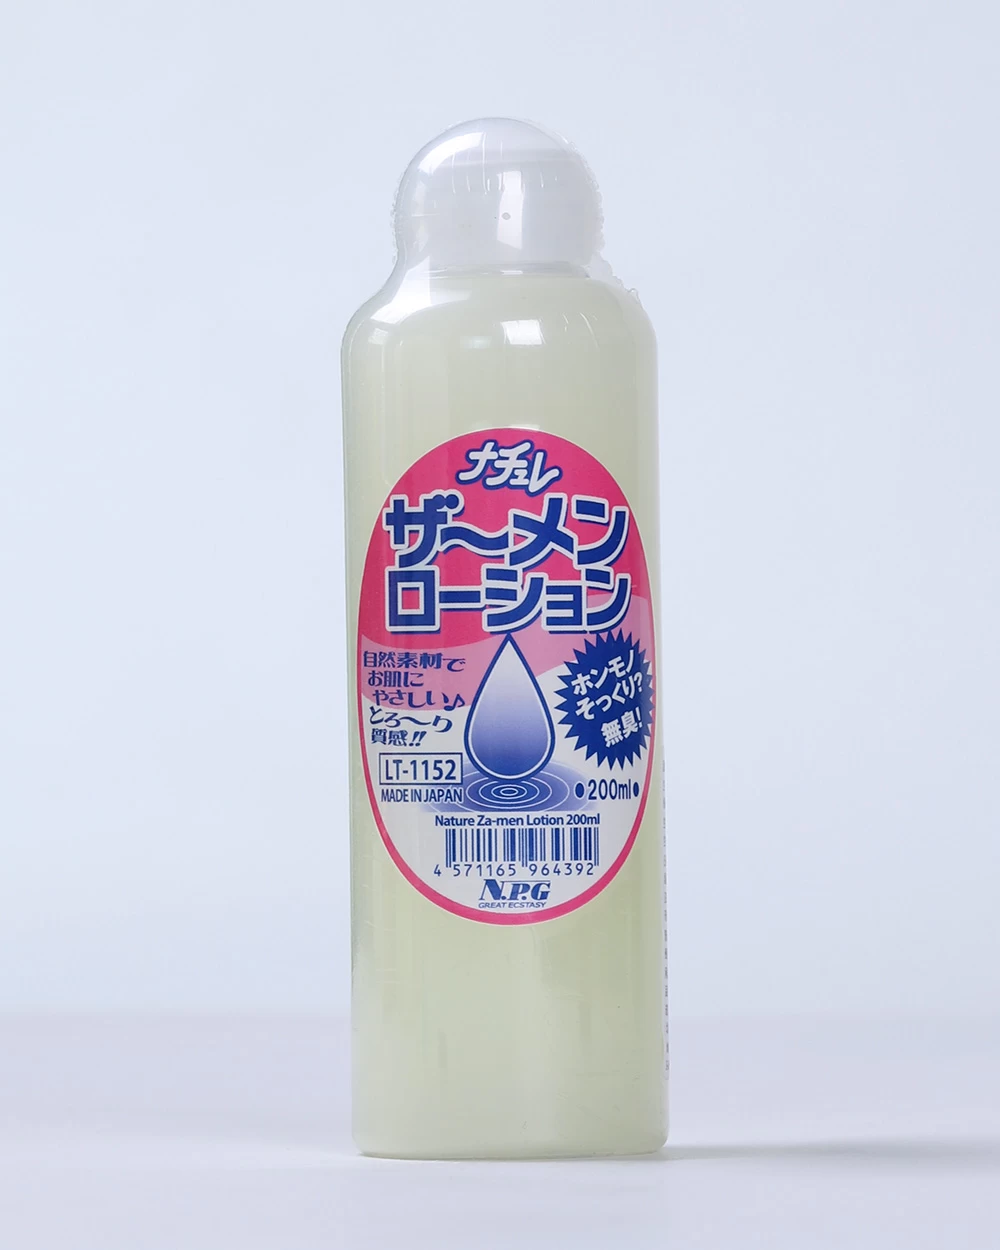  Shop bán Gel bôi trơn massage dạng tinh dịch cao cấp NPG Nature Za-men Lotion Made in Japan giá sỉ